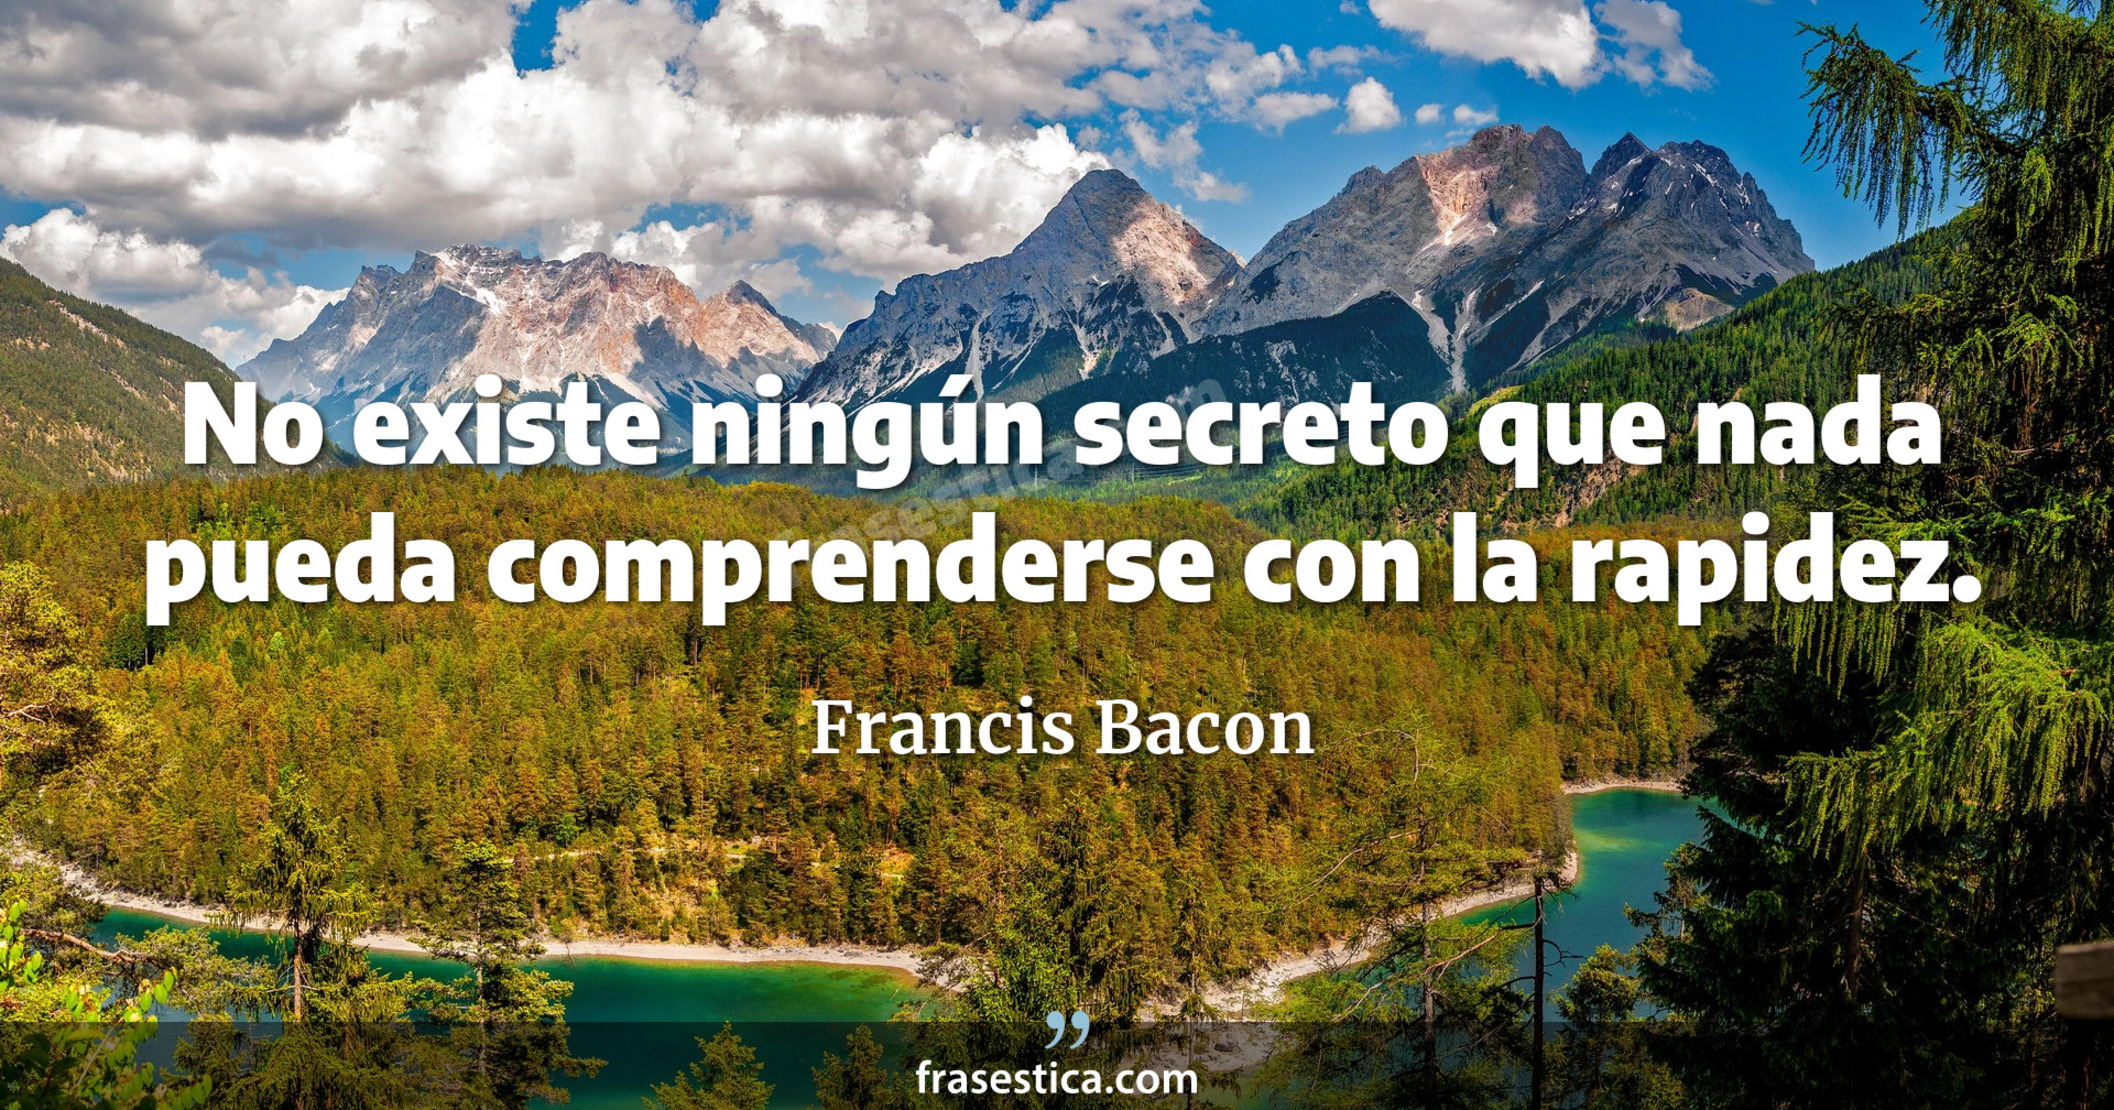 No existe ningún secreto que nada pueda comprenderse con la rapidez. - Francis Bacon